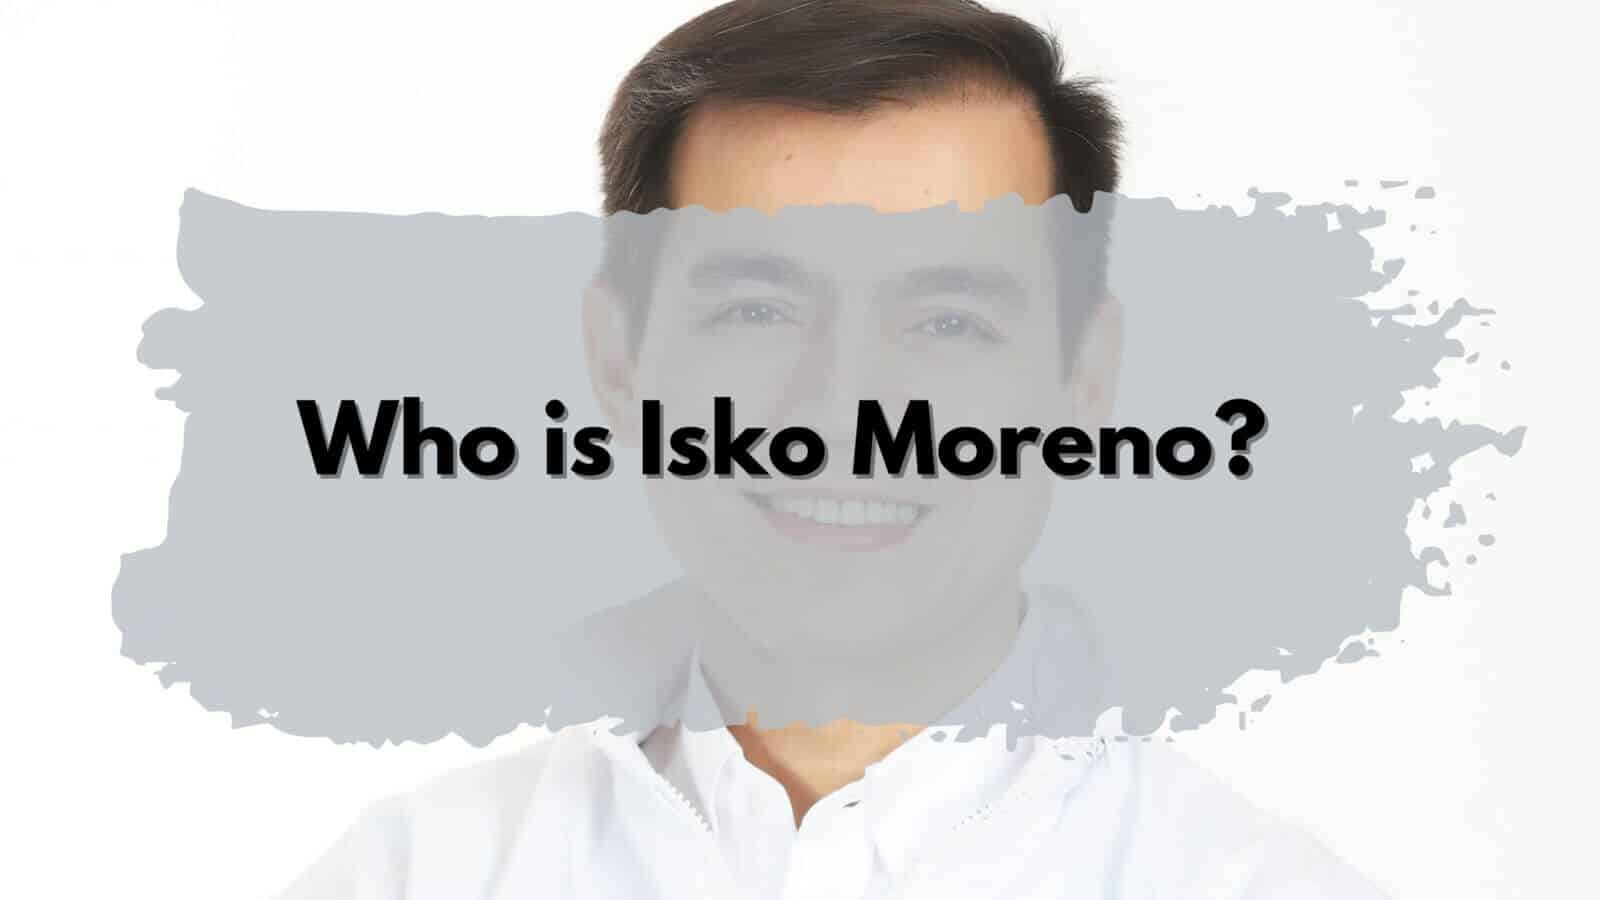 Isko Moreno, who is he?